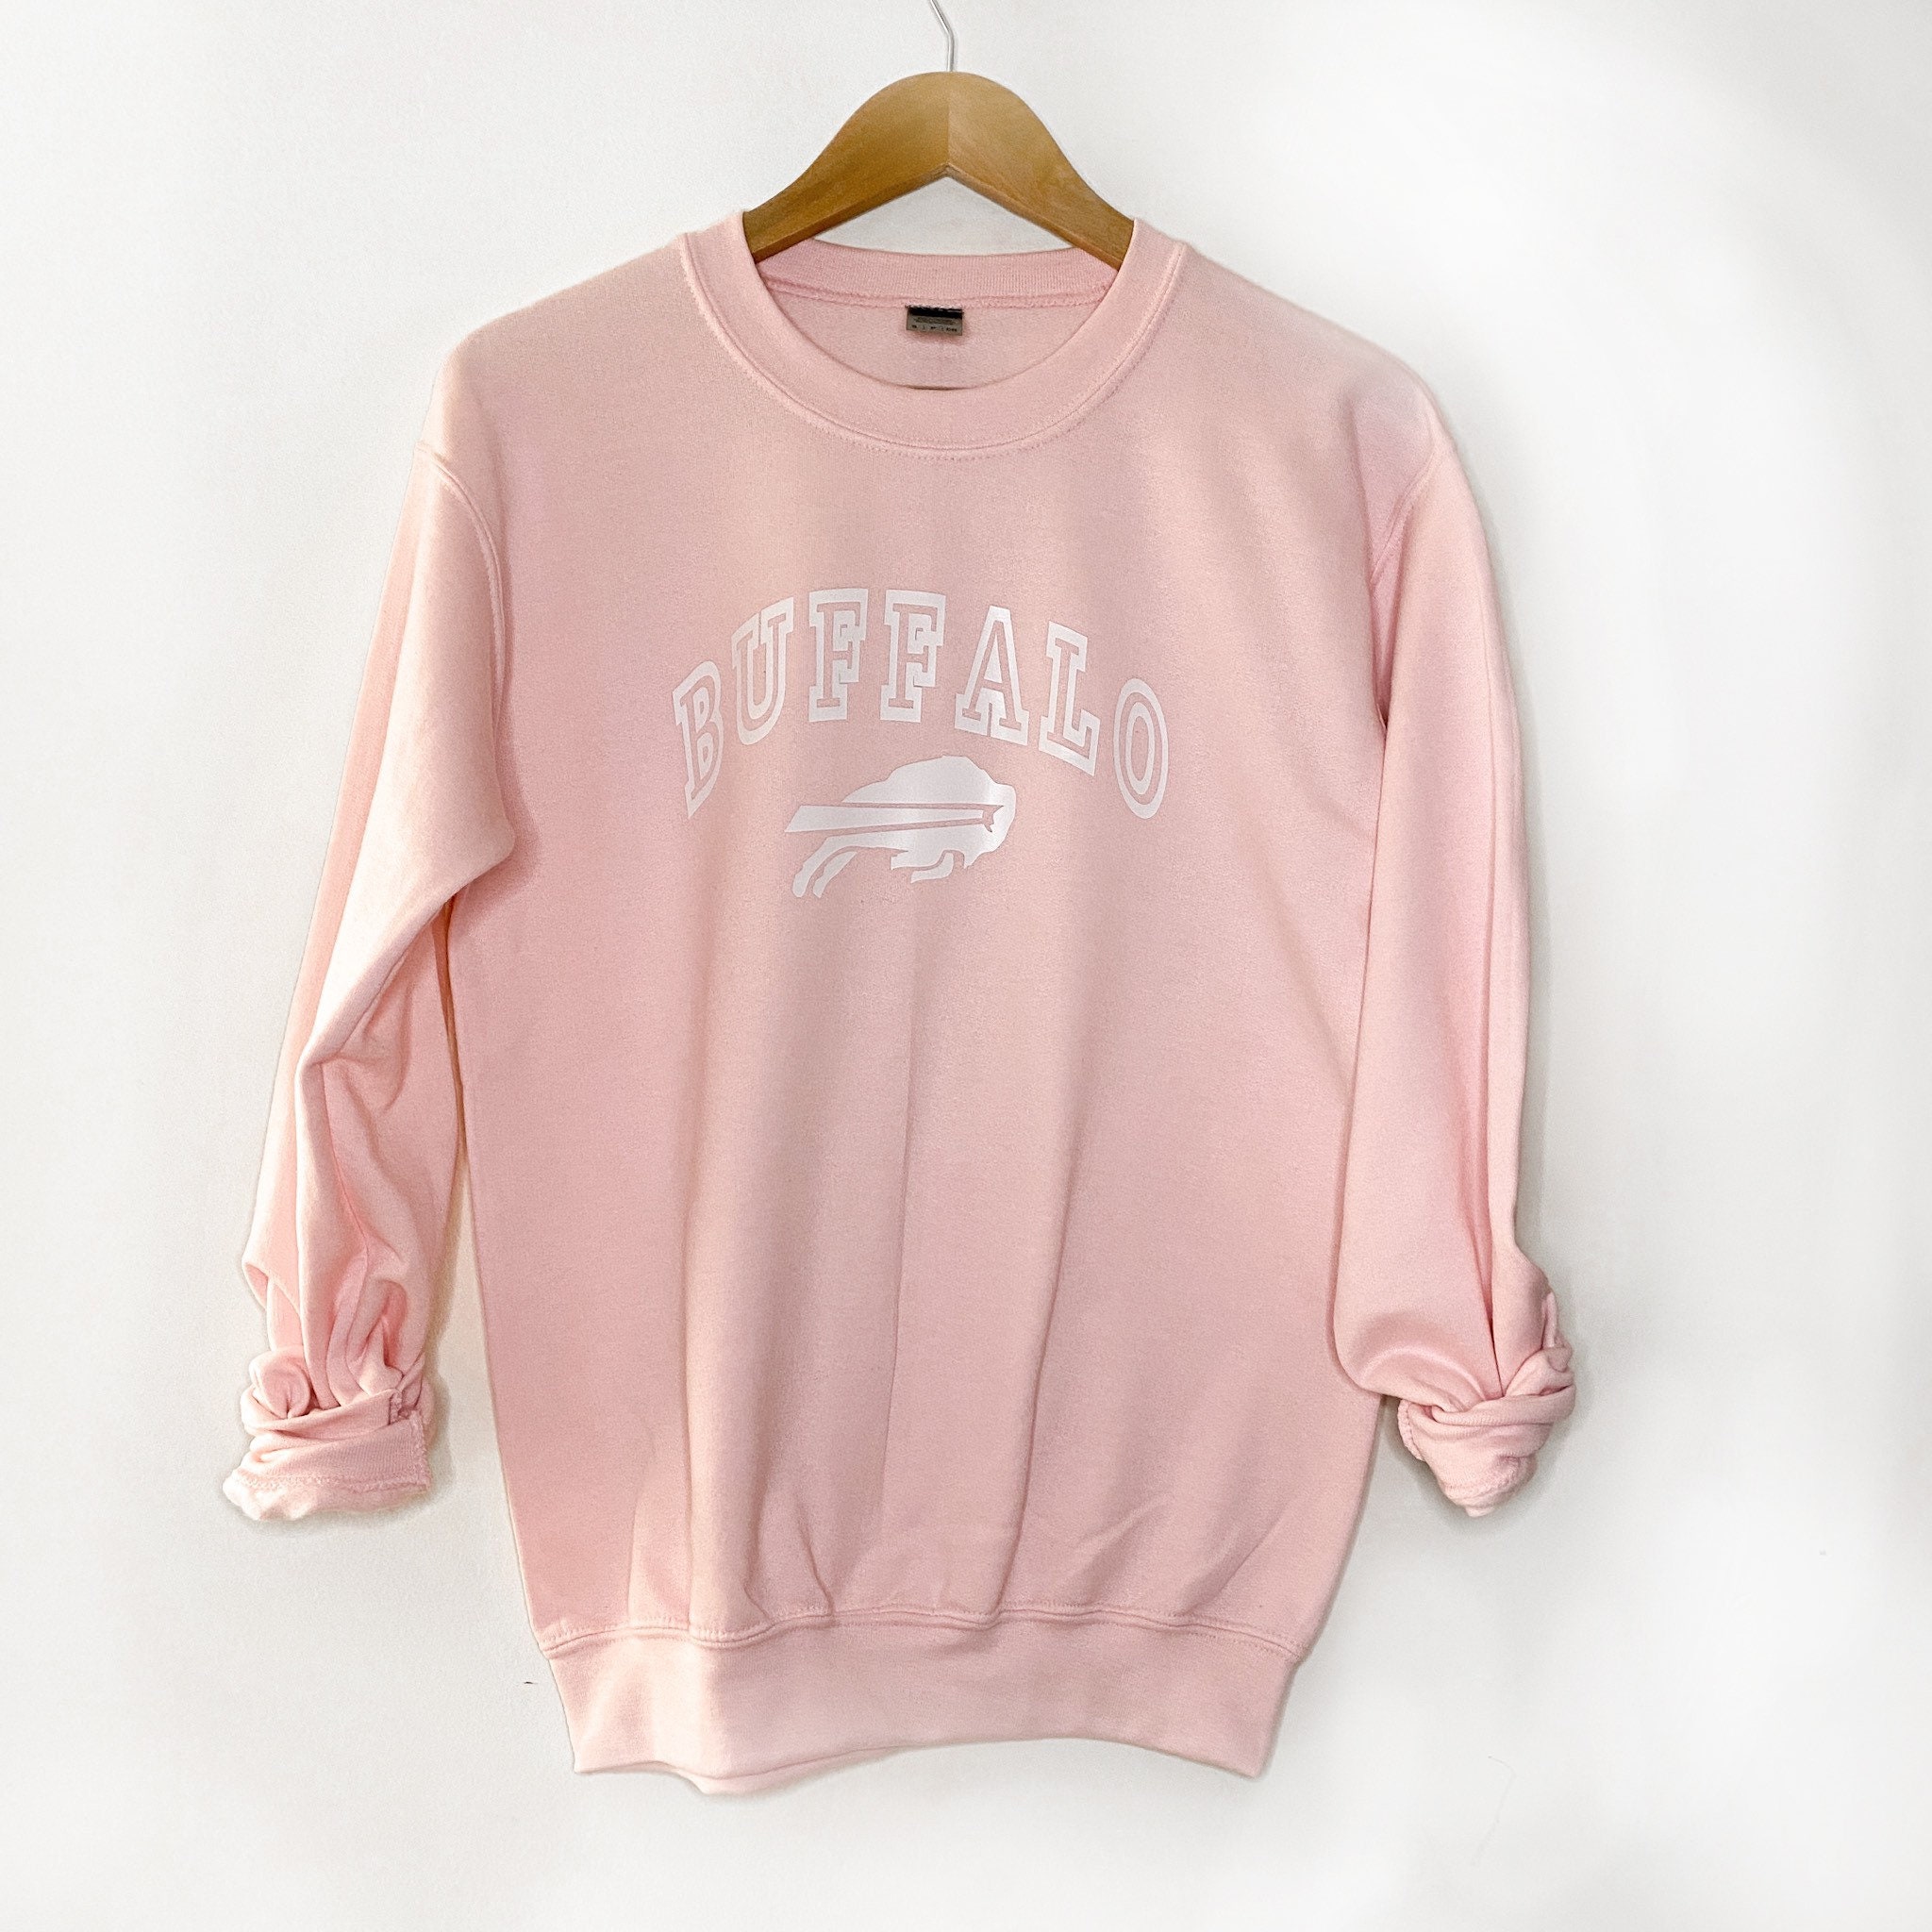 buffalo bills pink sweatshirt